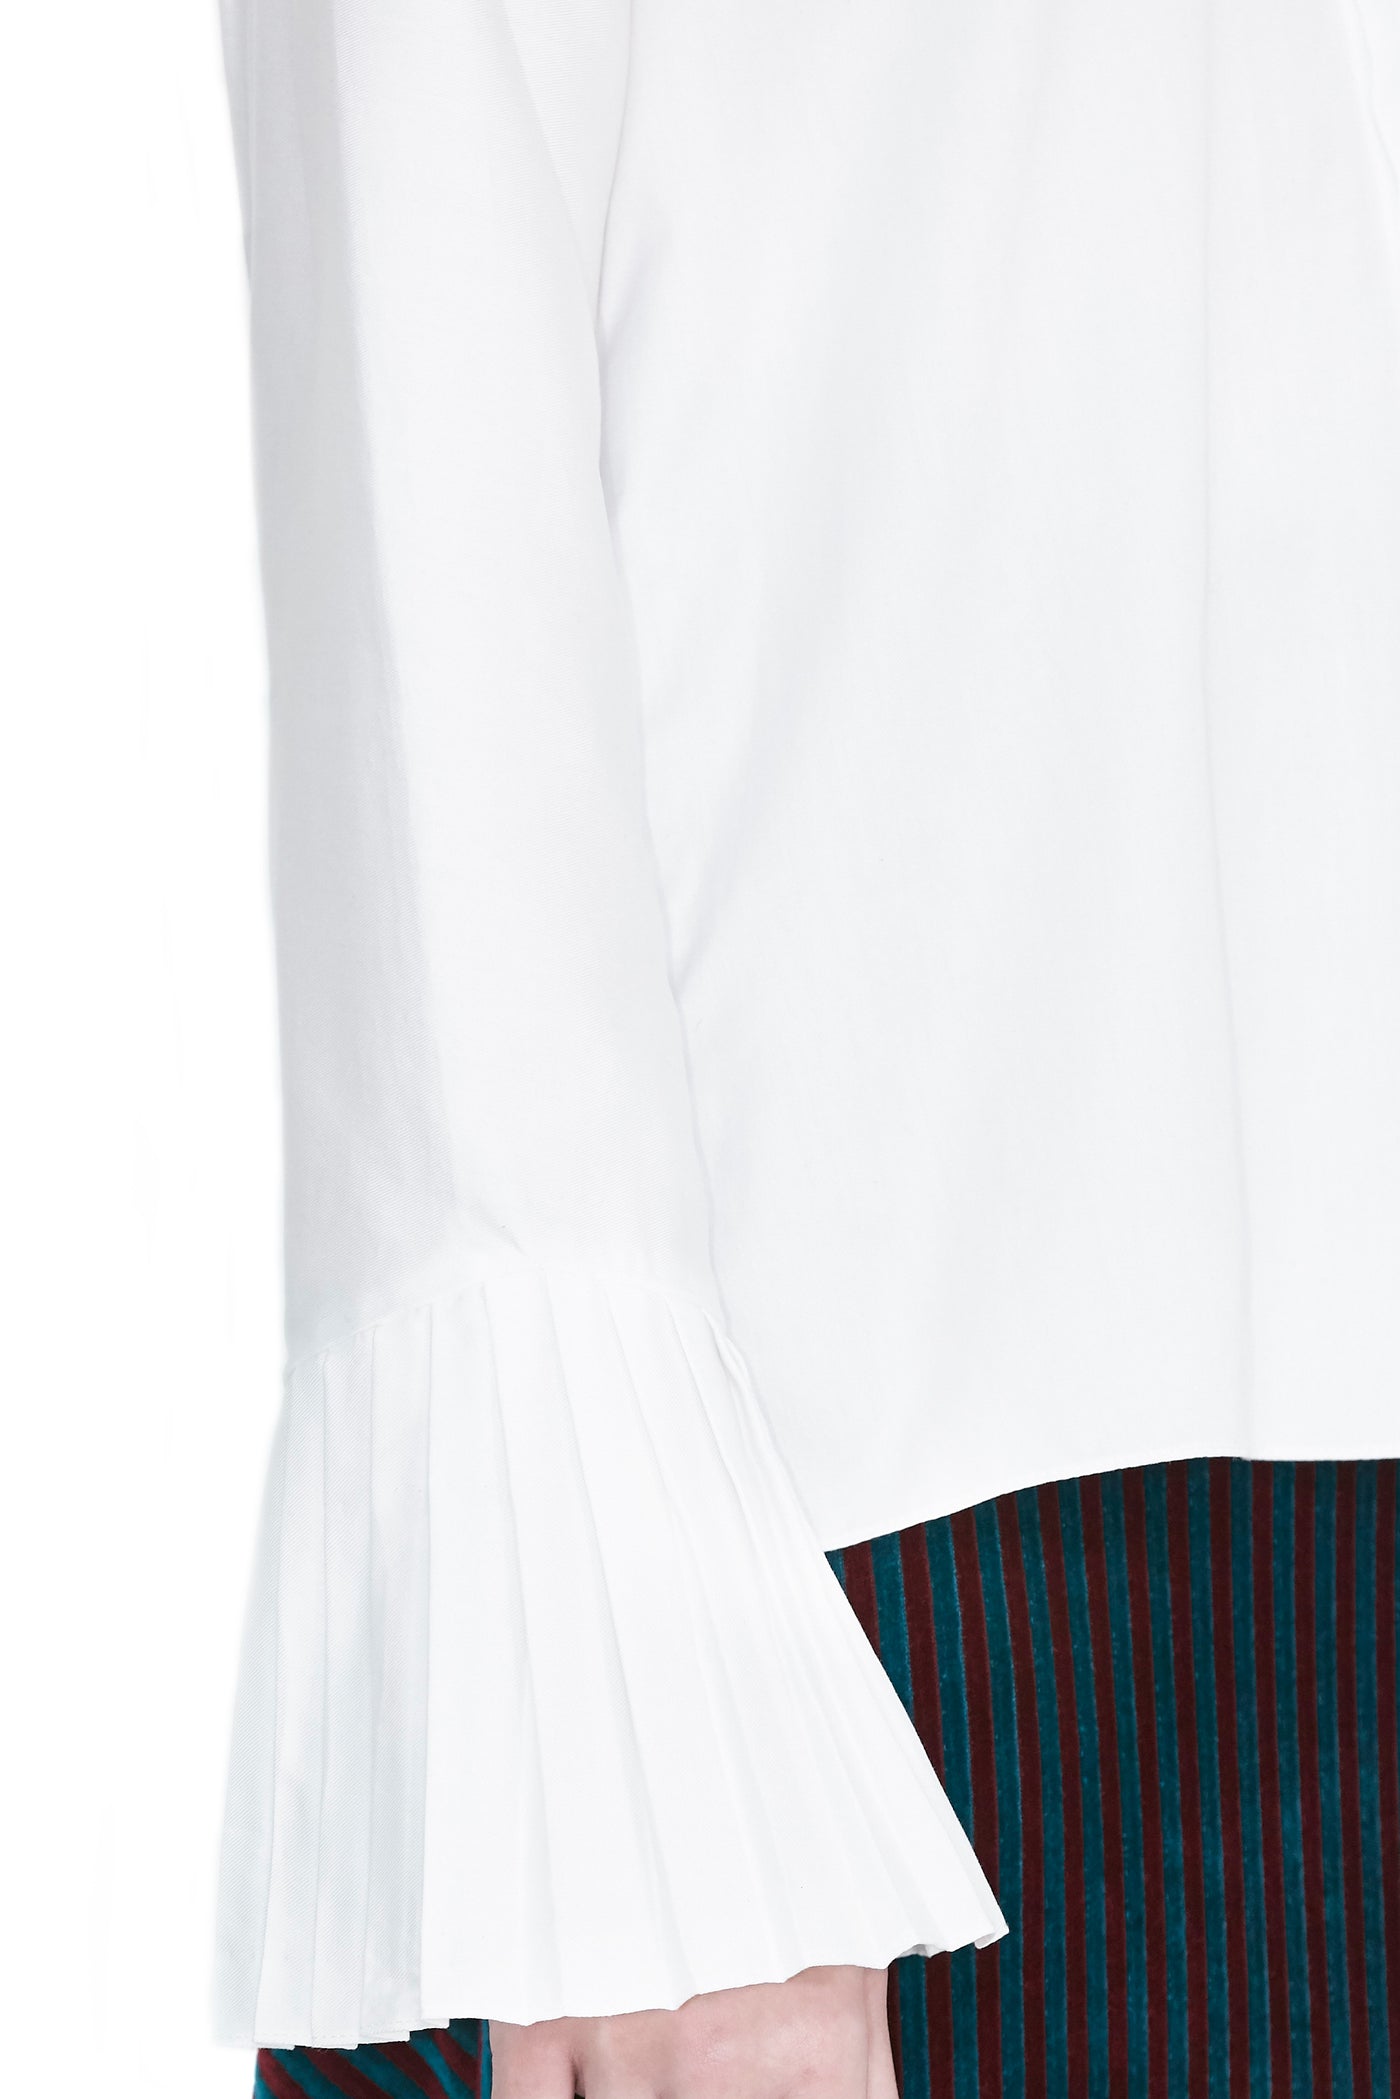 Camisa branca com botões e manga plissada